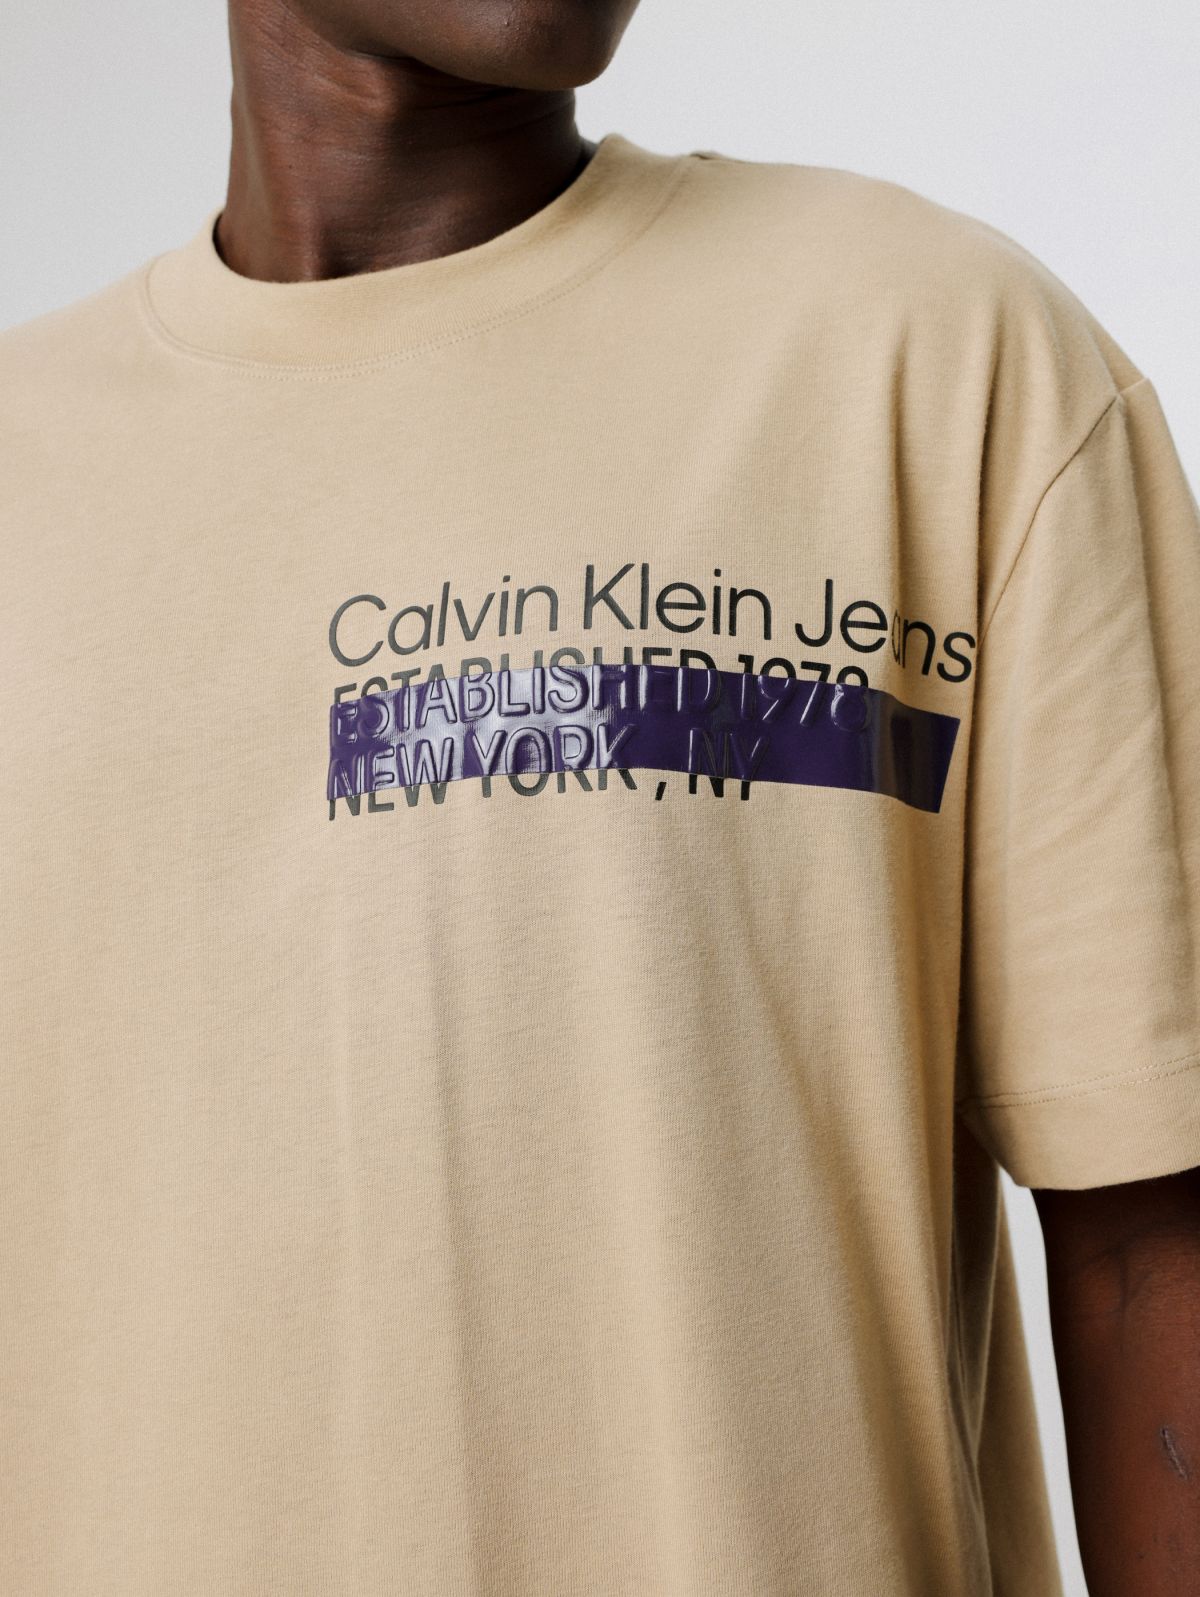  טי שירט עם הדפס לוגו של CALVIN KLEIN